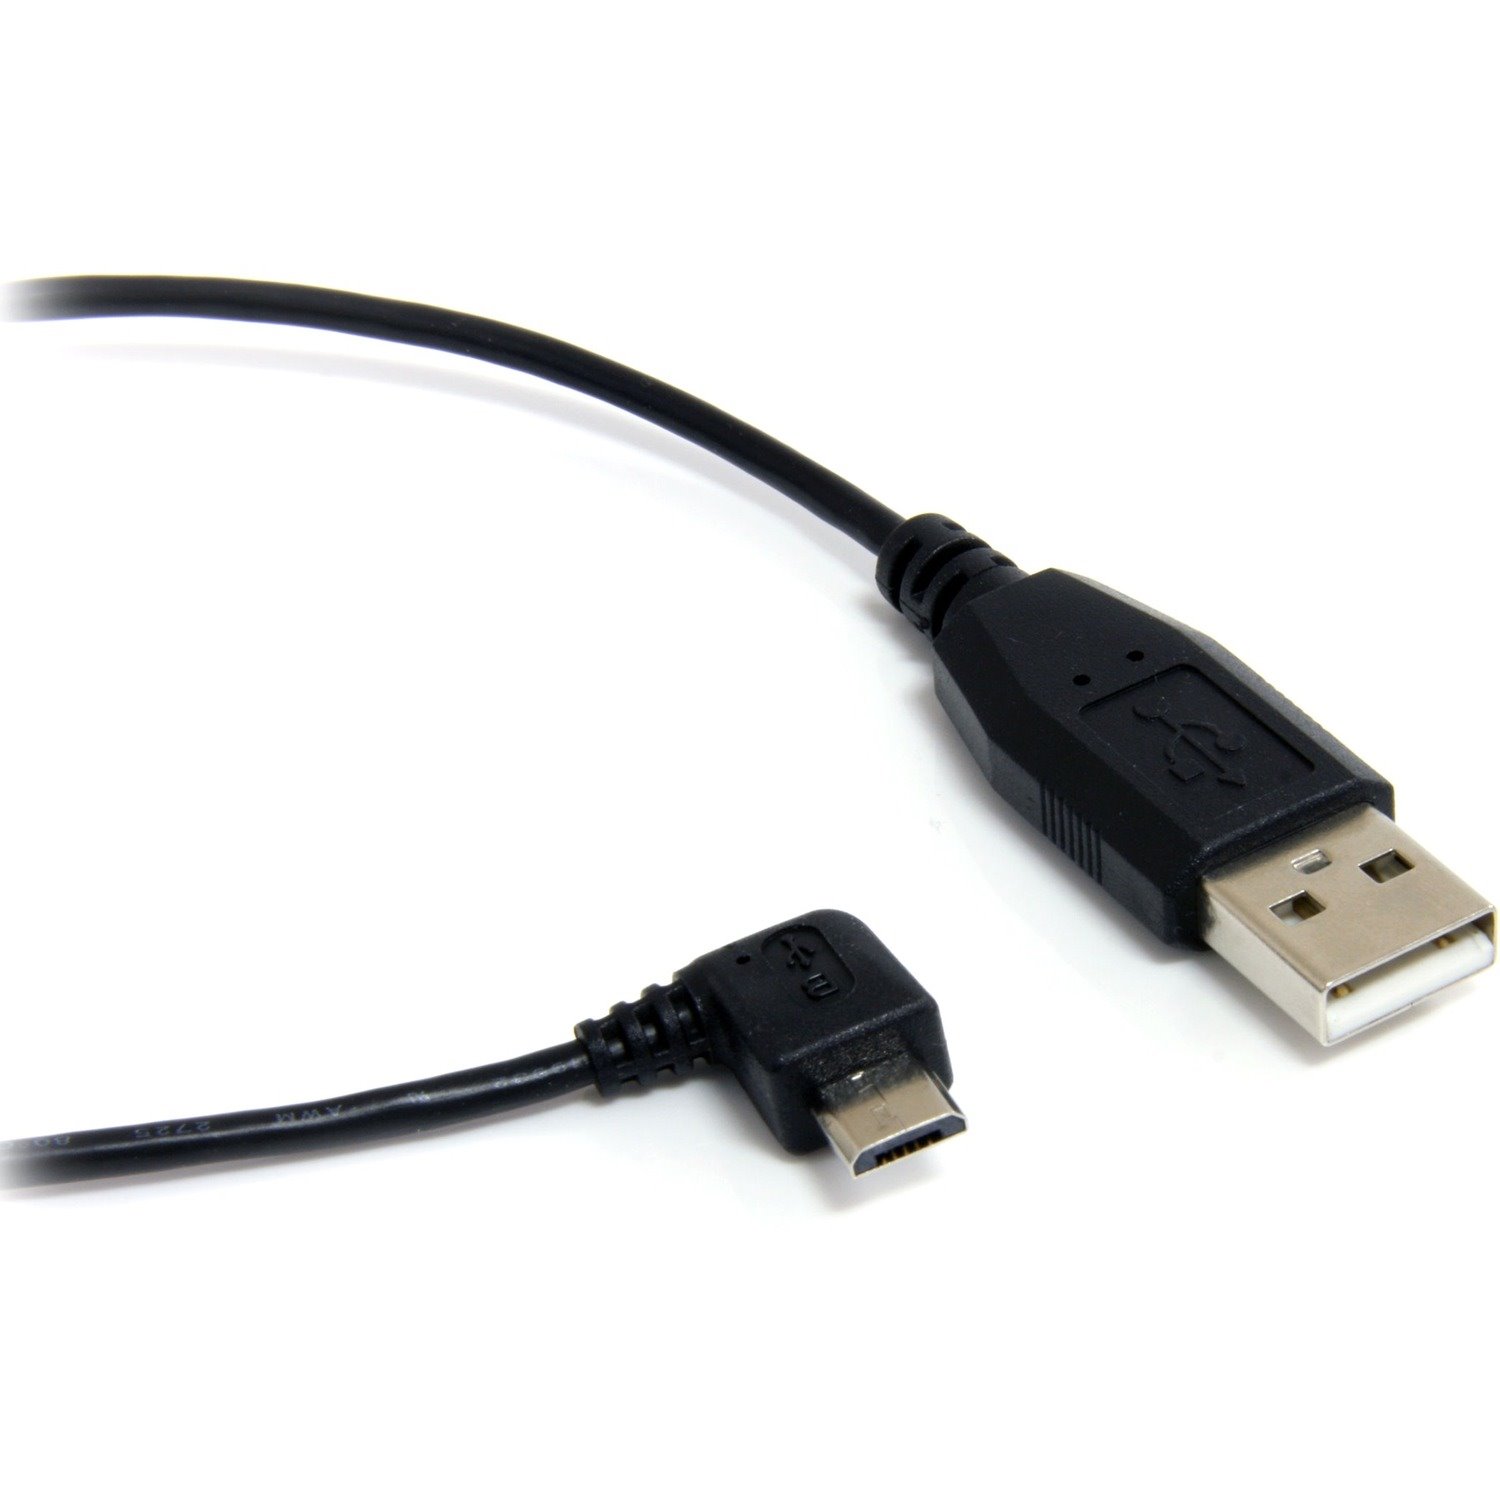 StarTech.com 91.44 cm USB/USB-B Data Transfer Cable for Smartphone, Digital Camera, Tablet, GPS, PC, PDA - 1